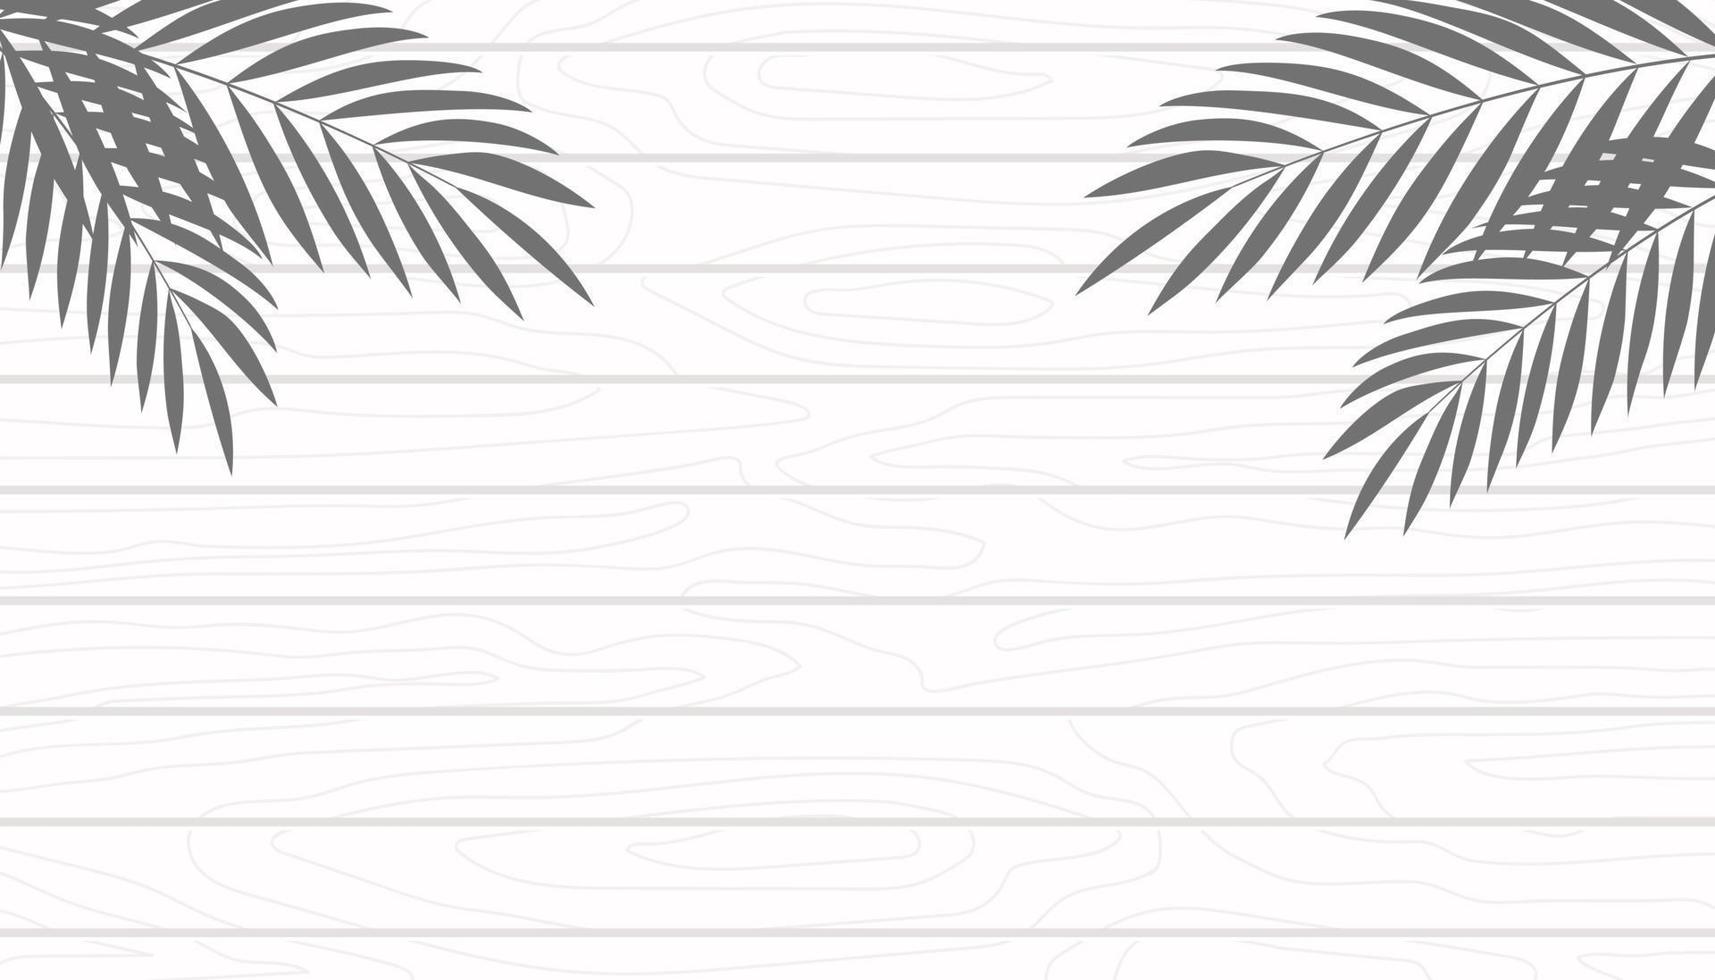 textura de madera blanca con fondo de sombra de hojas de palma, espacio de copia. ilustración vectorial vector